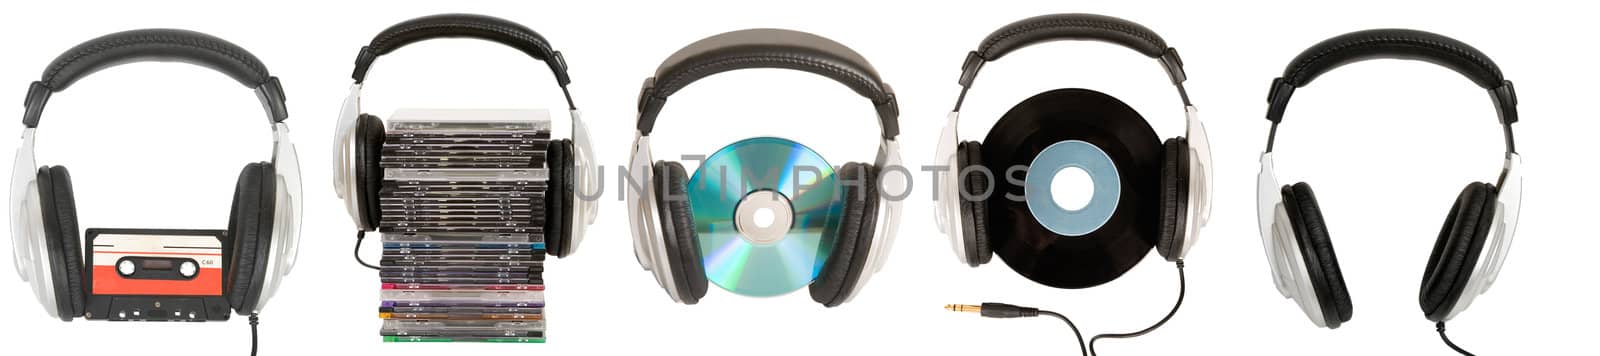 front view of dj headphones by VictorO